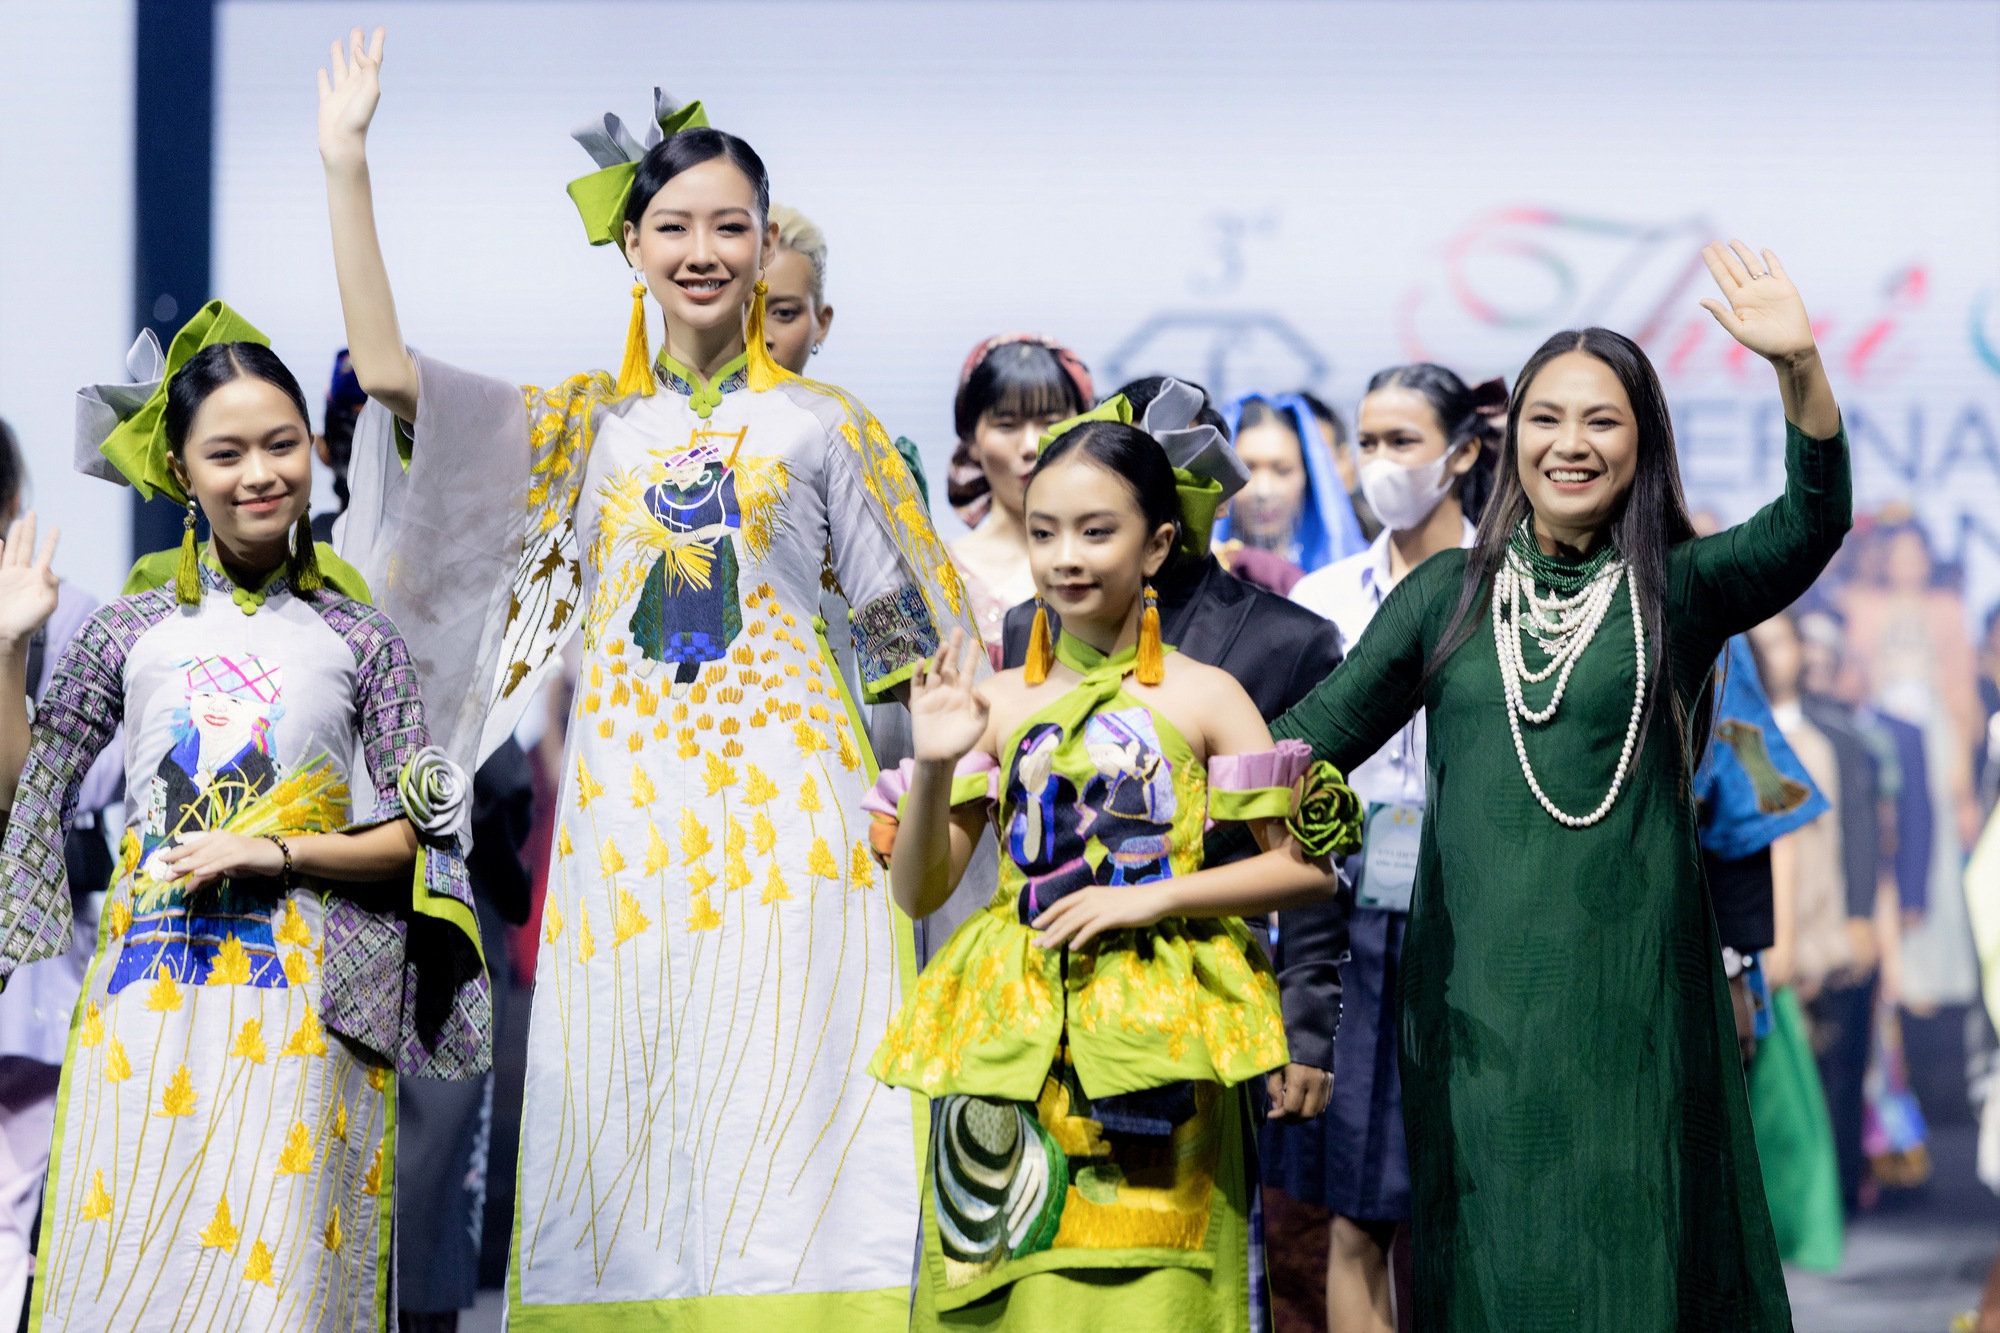 Hoa hậu Thùy Tiên trở lại Thái Lan sau hơn 1 tháng hết nhiệm kỳ Hoa hậu Hòa Bình  - Ảnh 2.